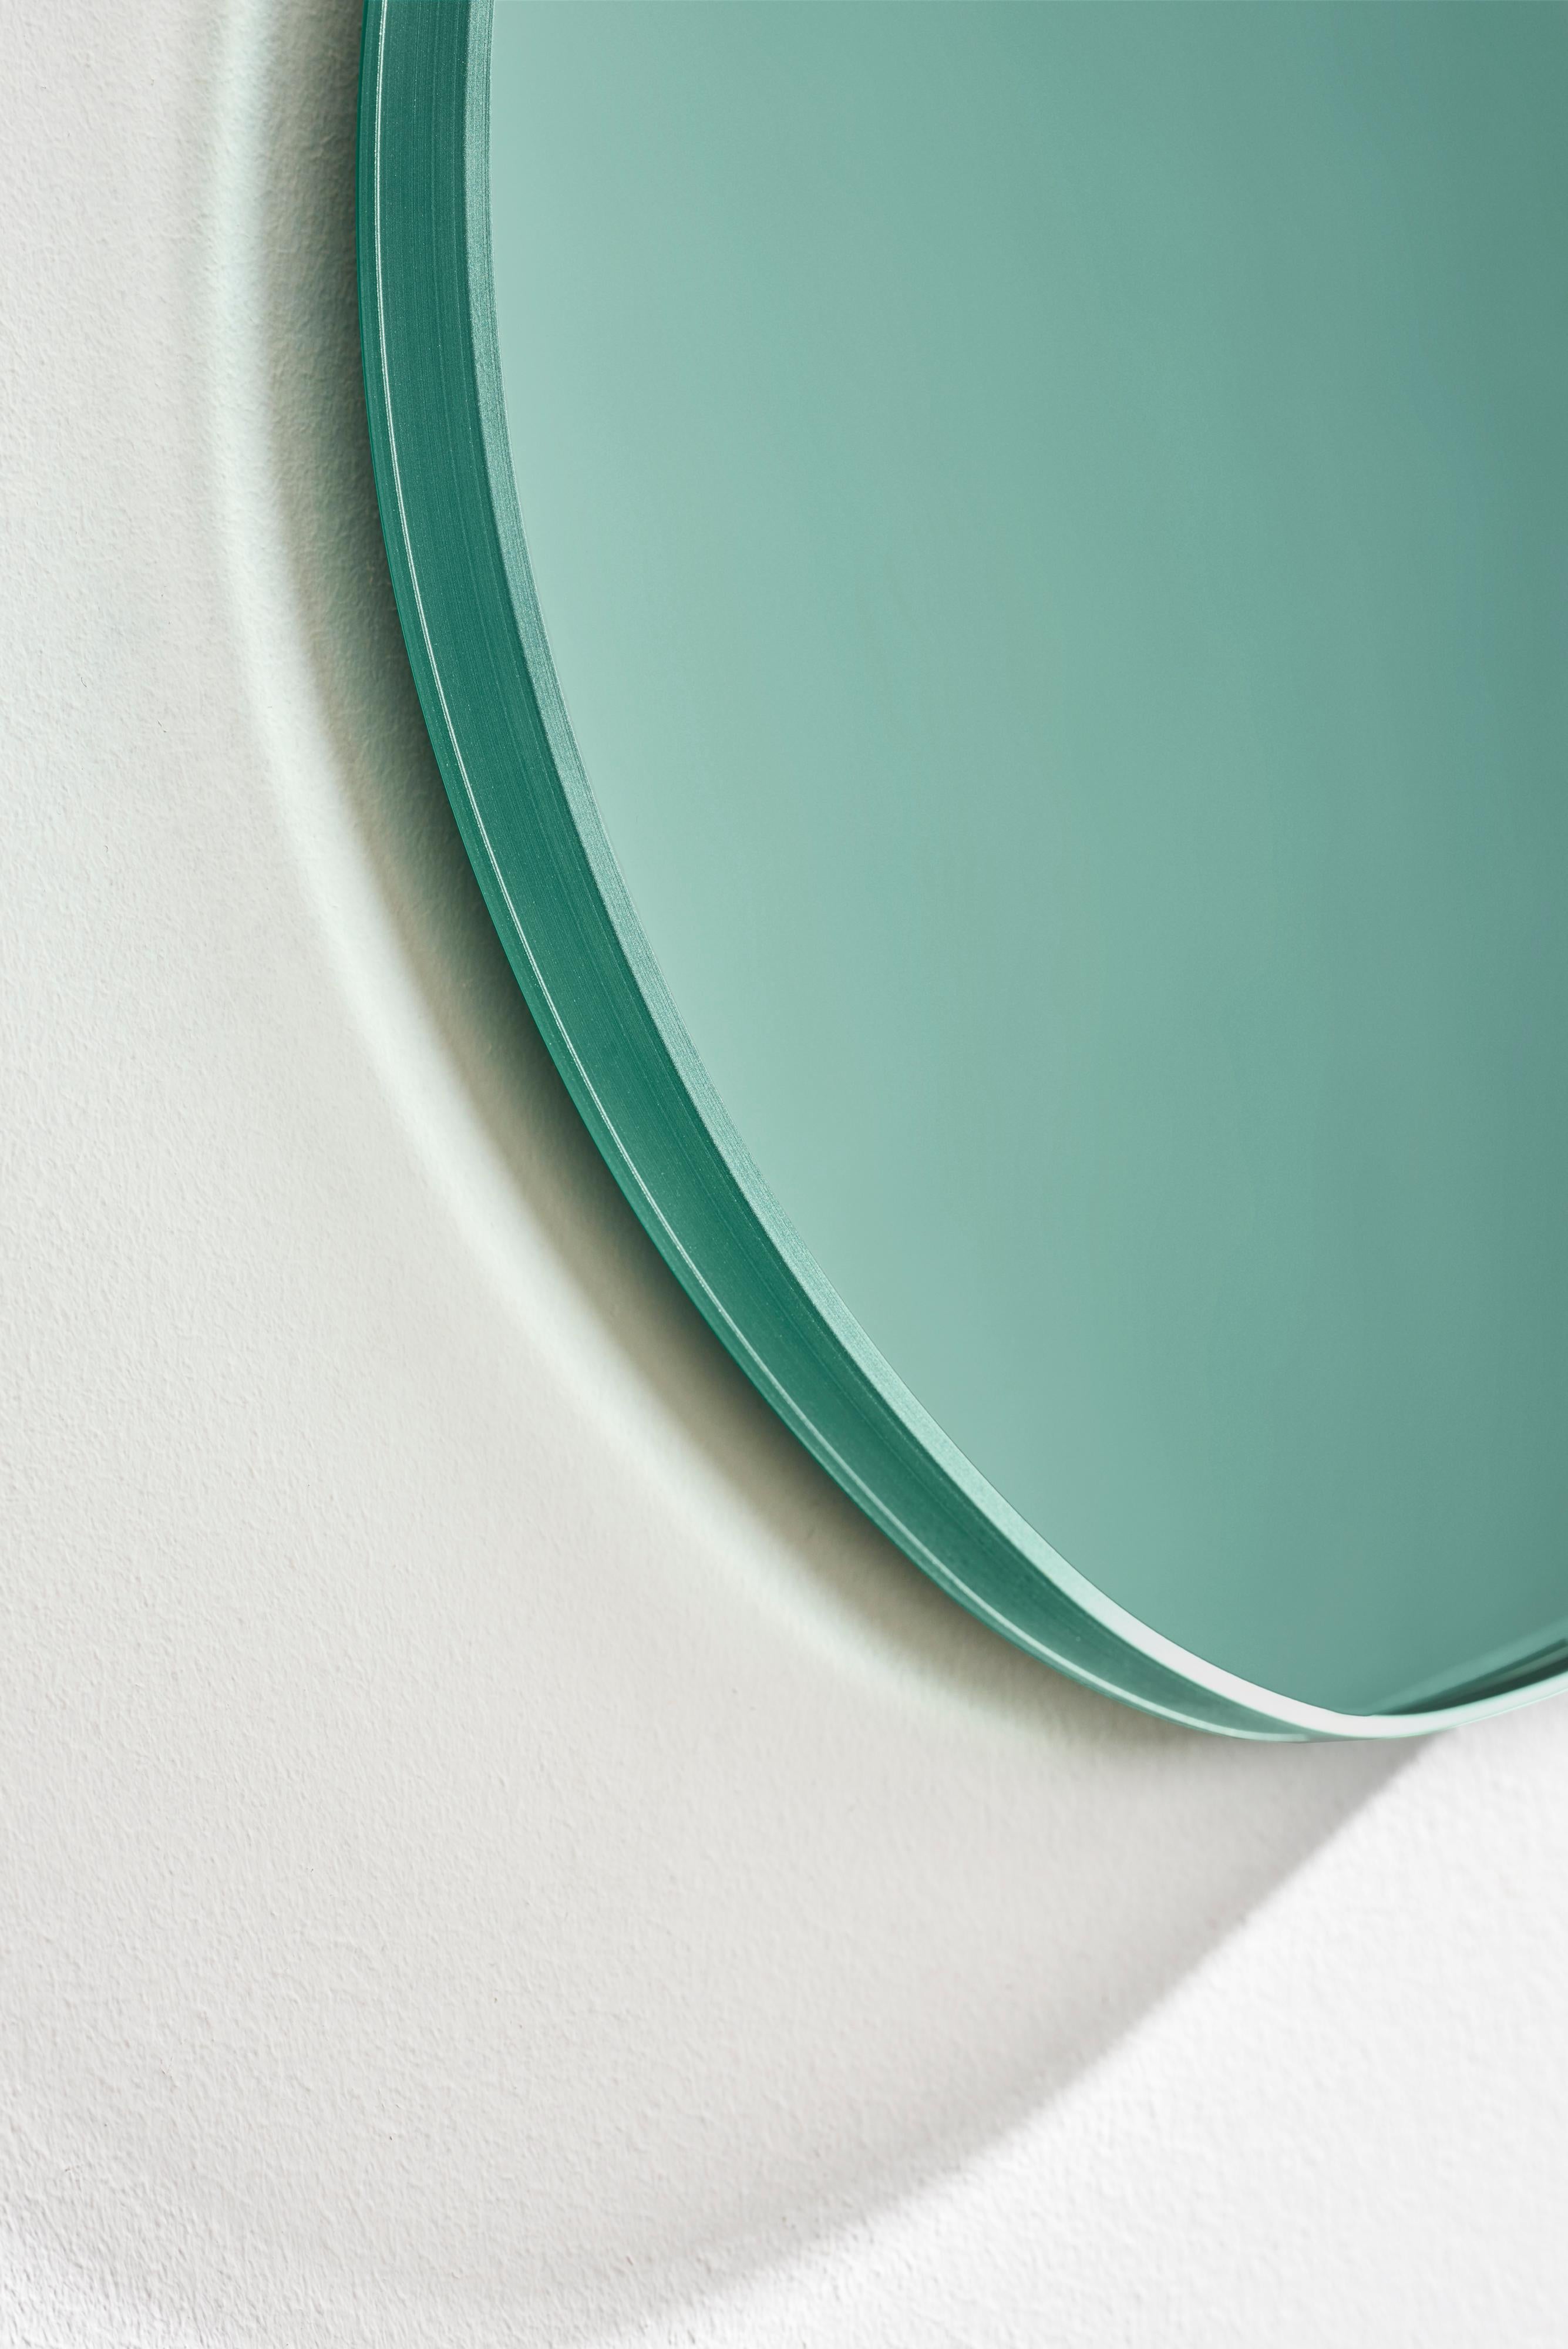 green round mirror